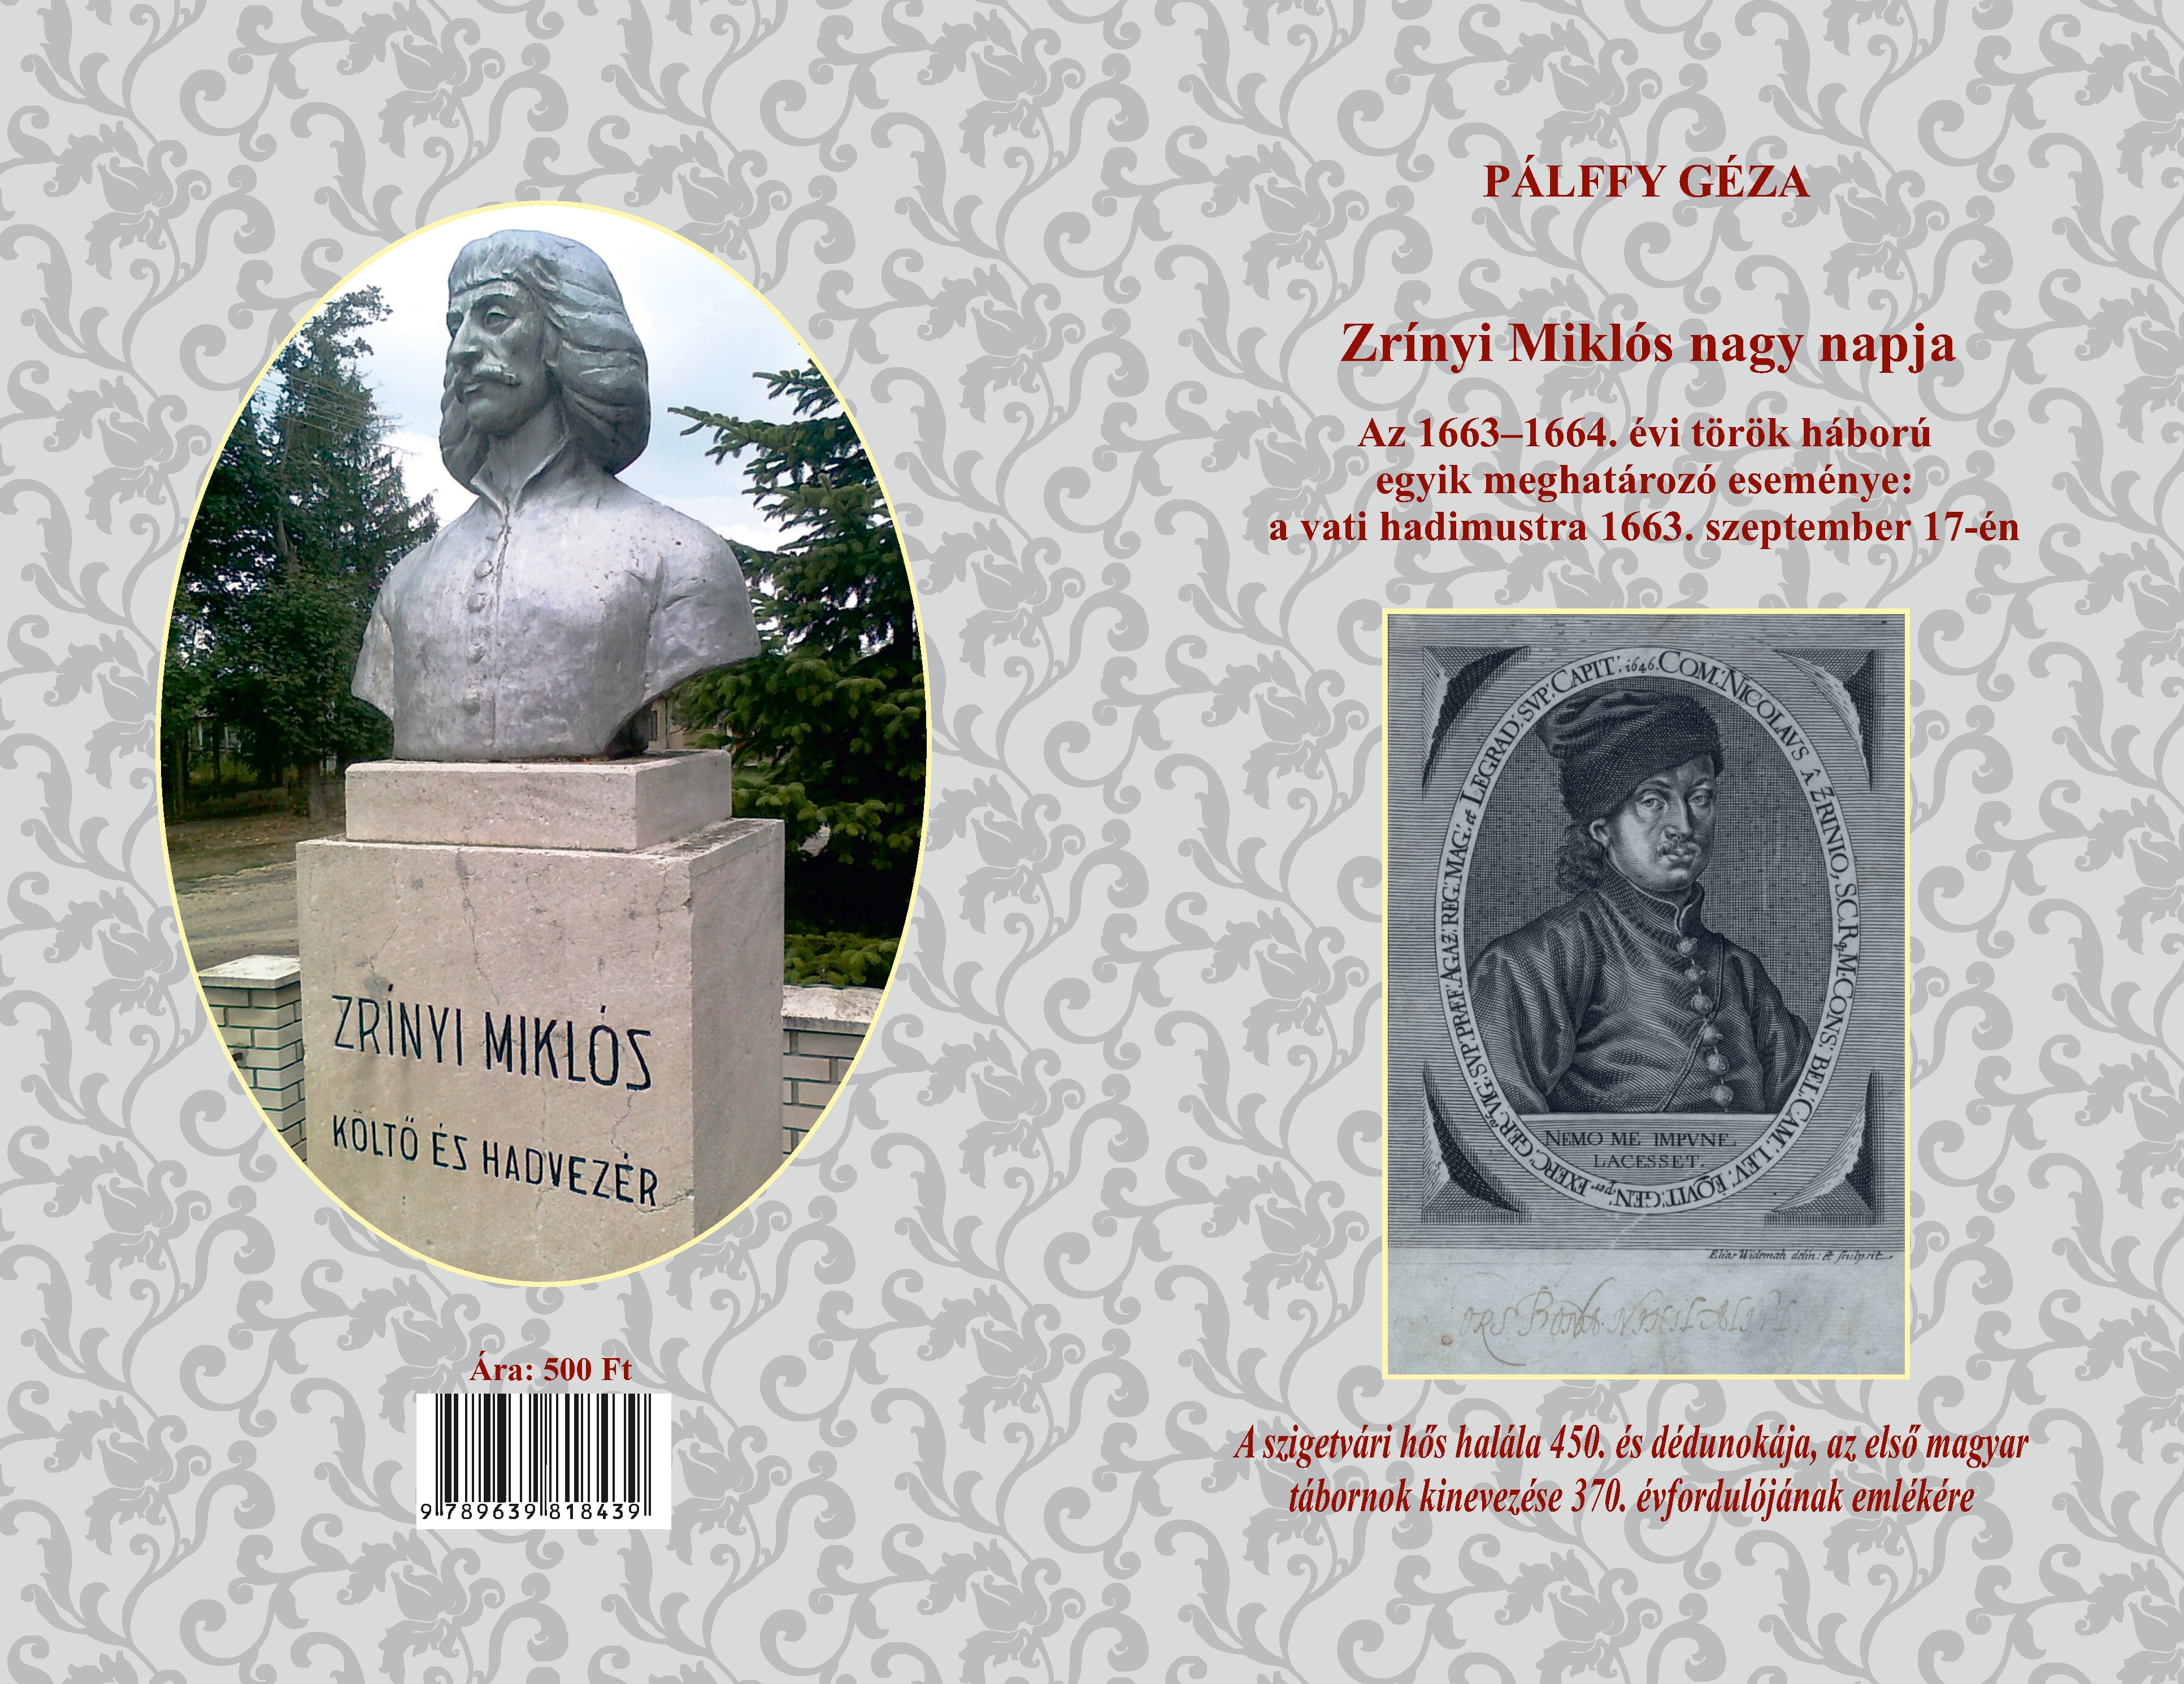 Megjelent Pálffy Géza Zrínyi-könyvének második, javított kiadása